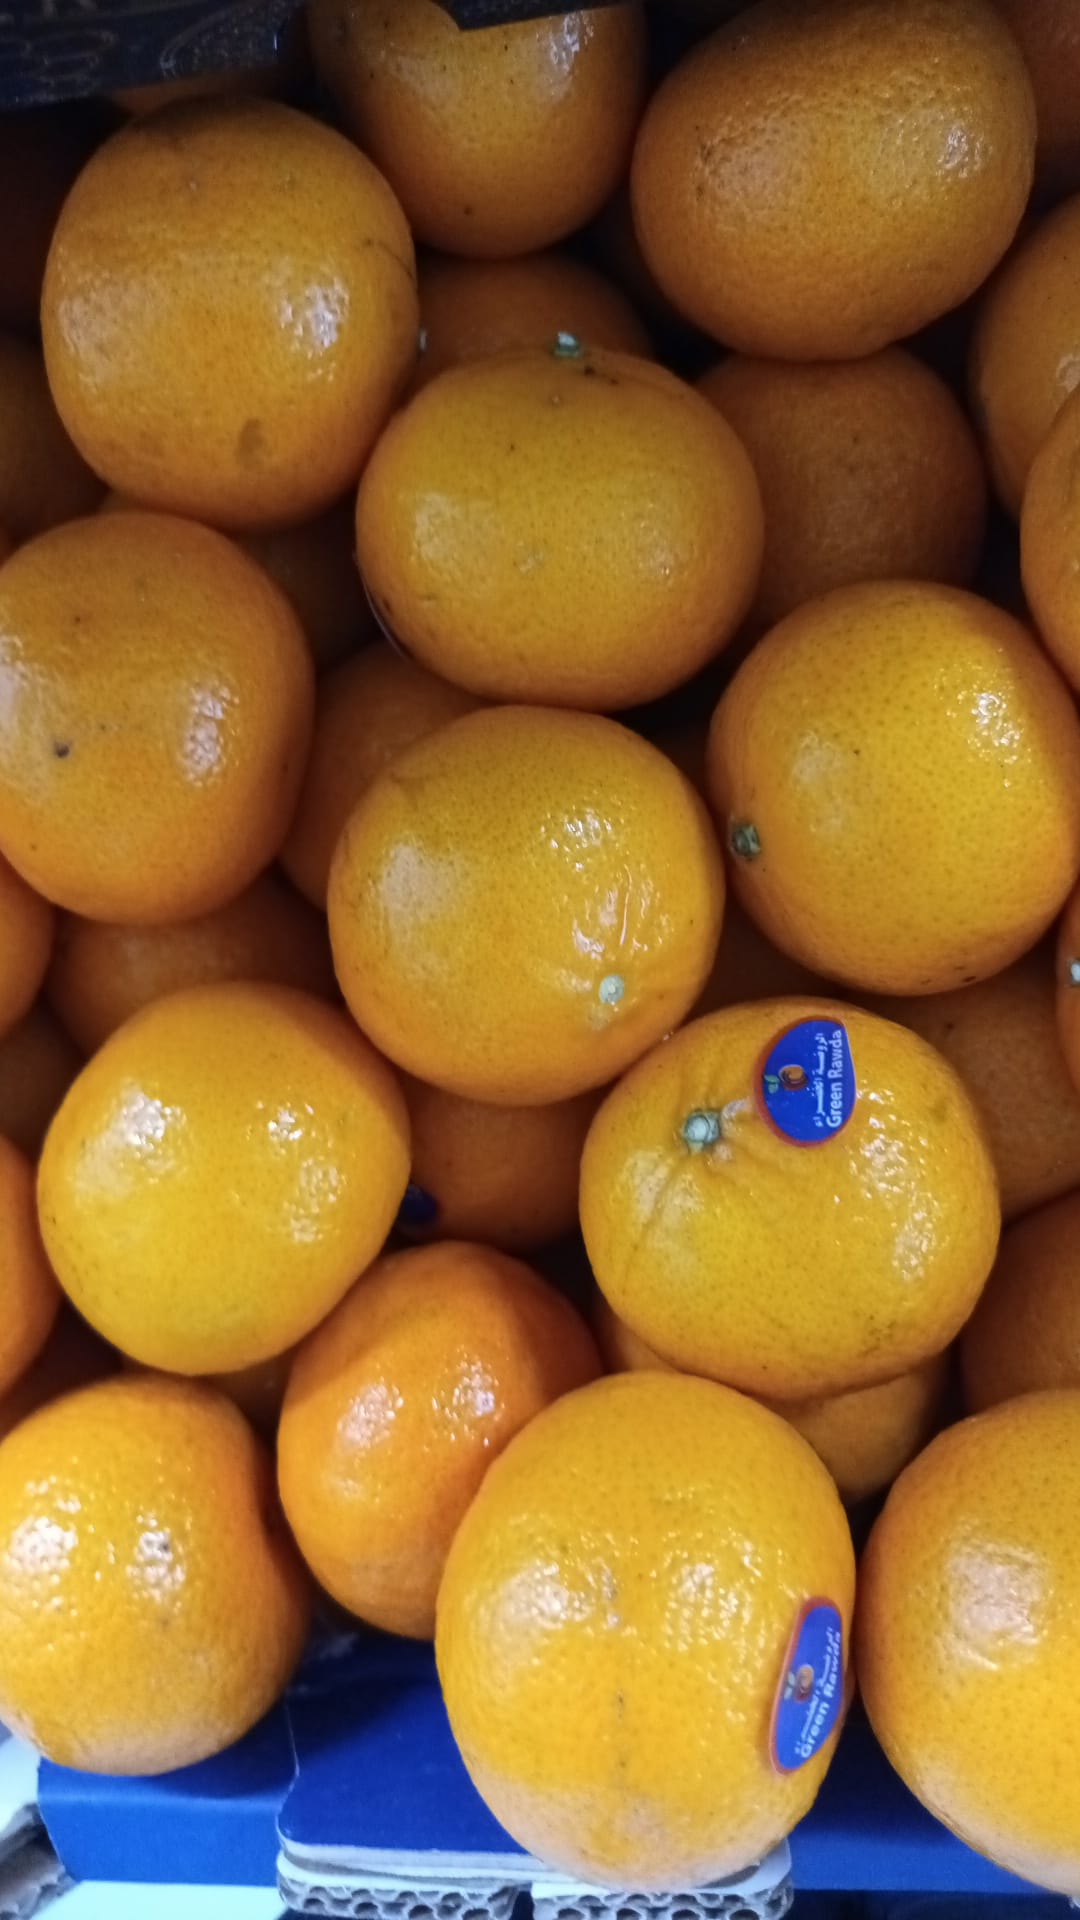 Ugly Mandarins Egypt Oranges 1kg ( scaring)